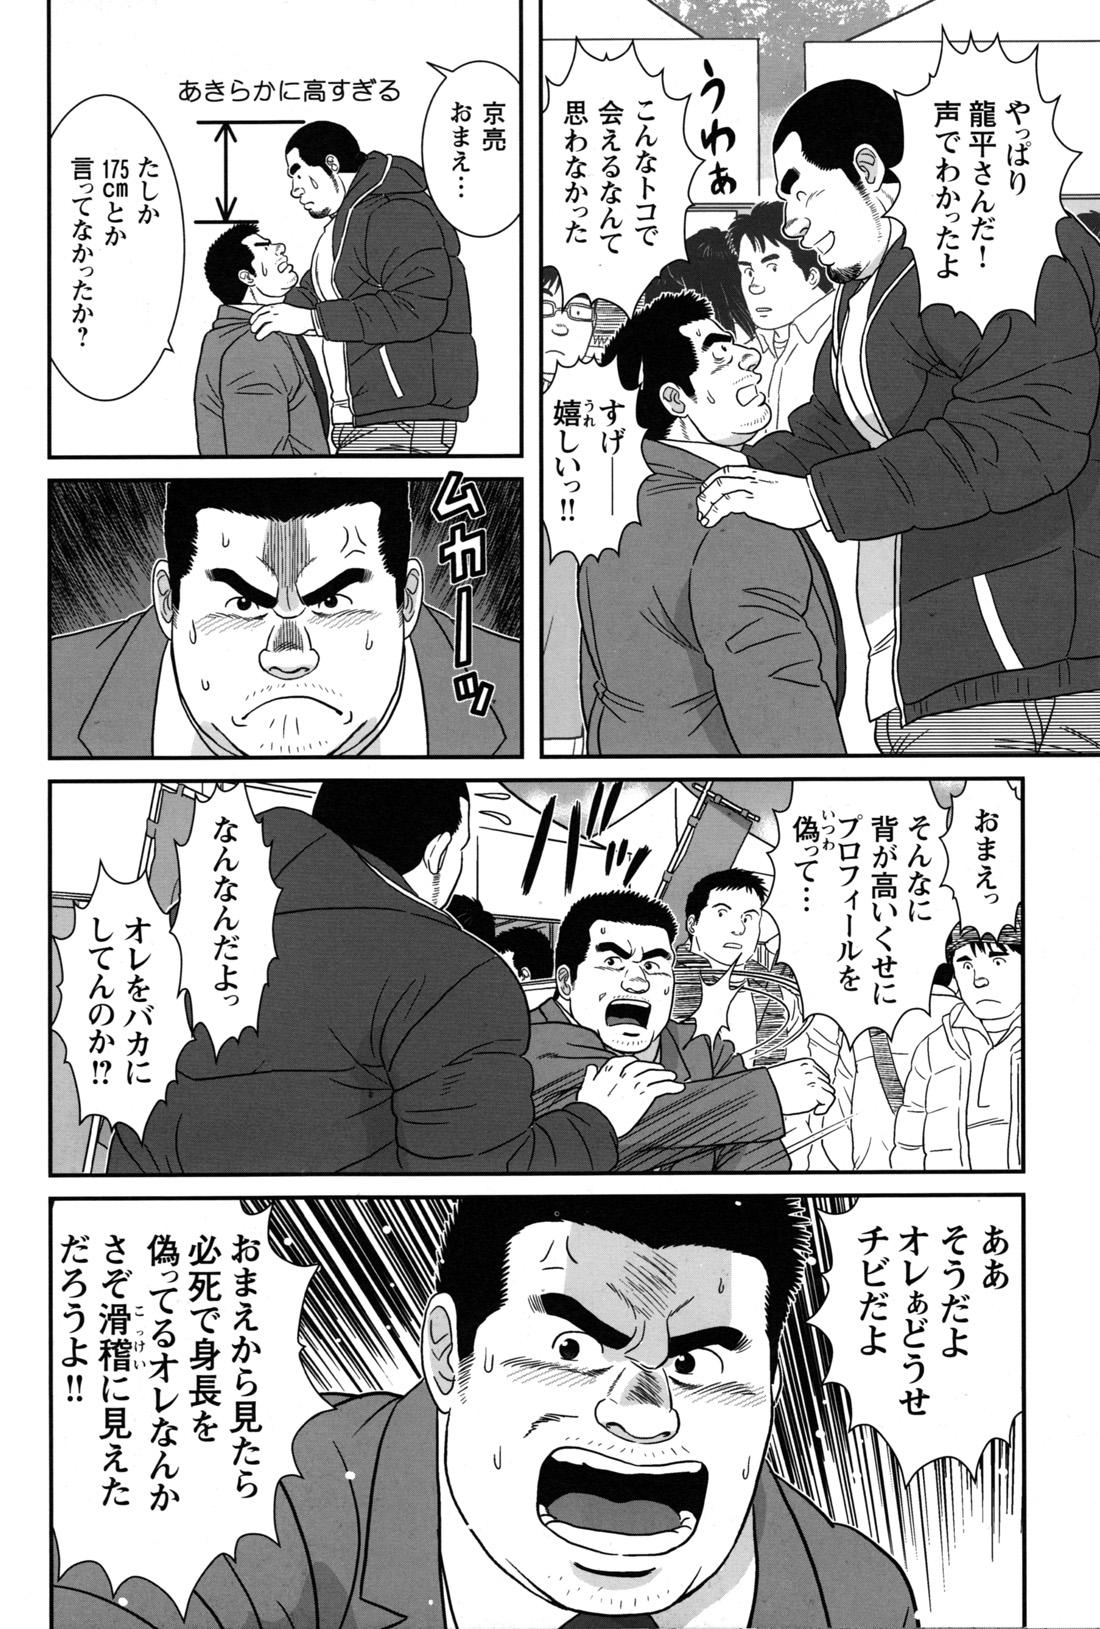 Comic G-men Gaho No.09 Gacchibi Zeme 92